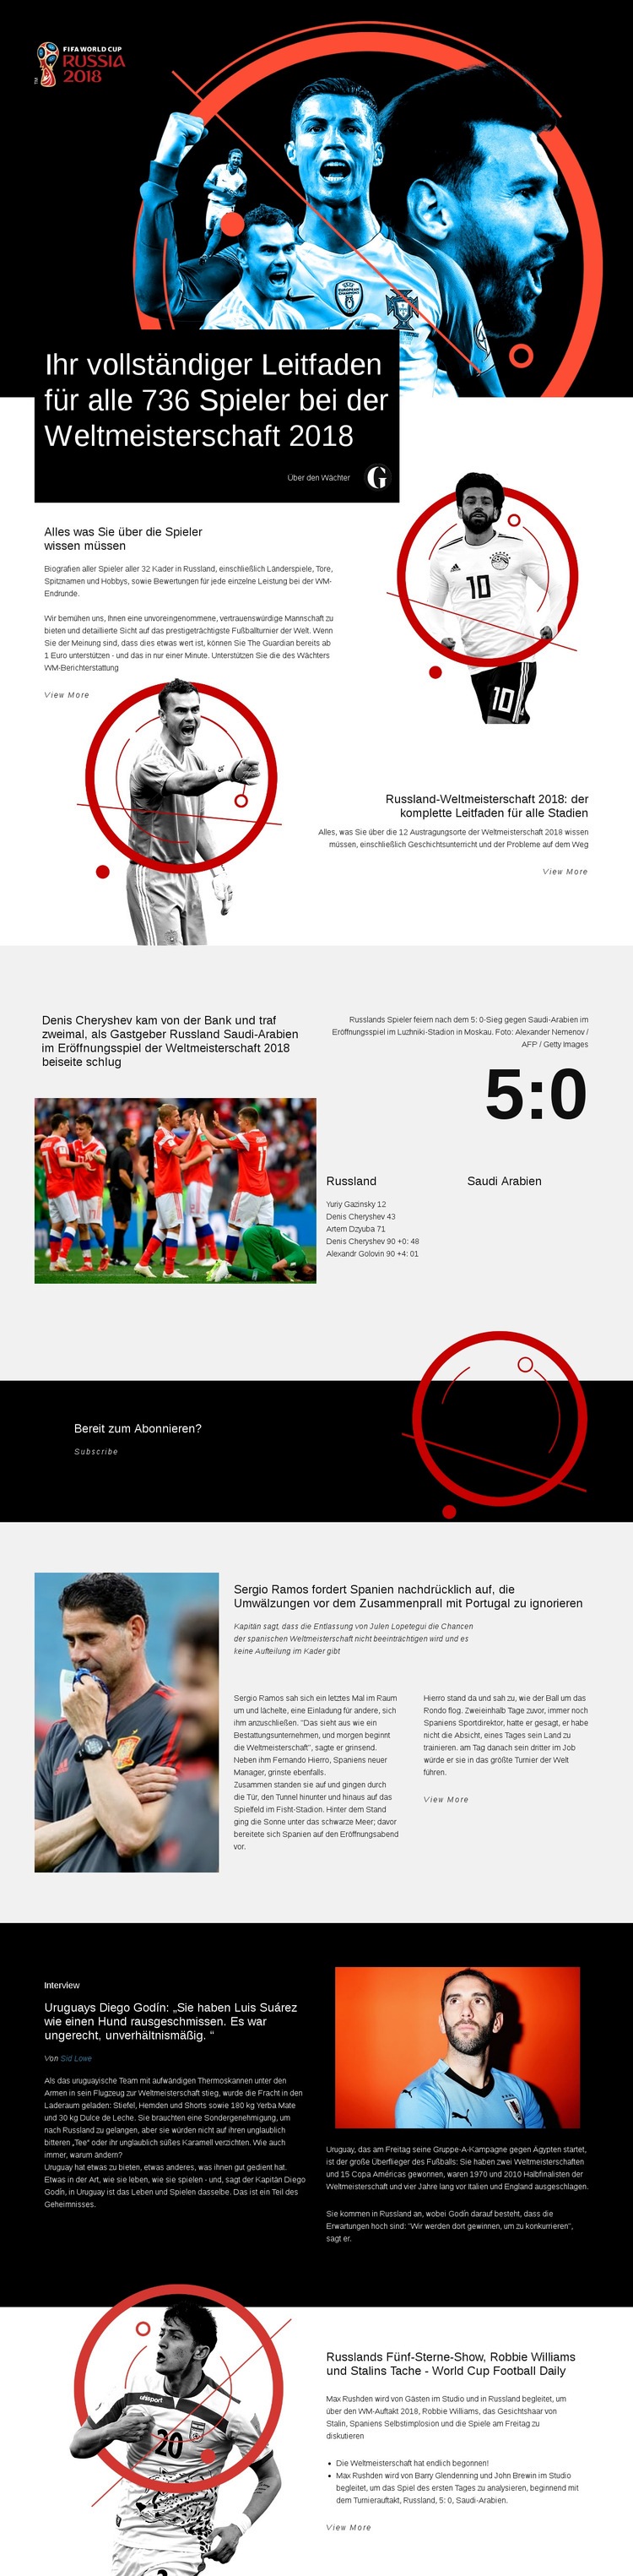 Weltmeisterschaft 2018 Website design